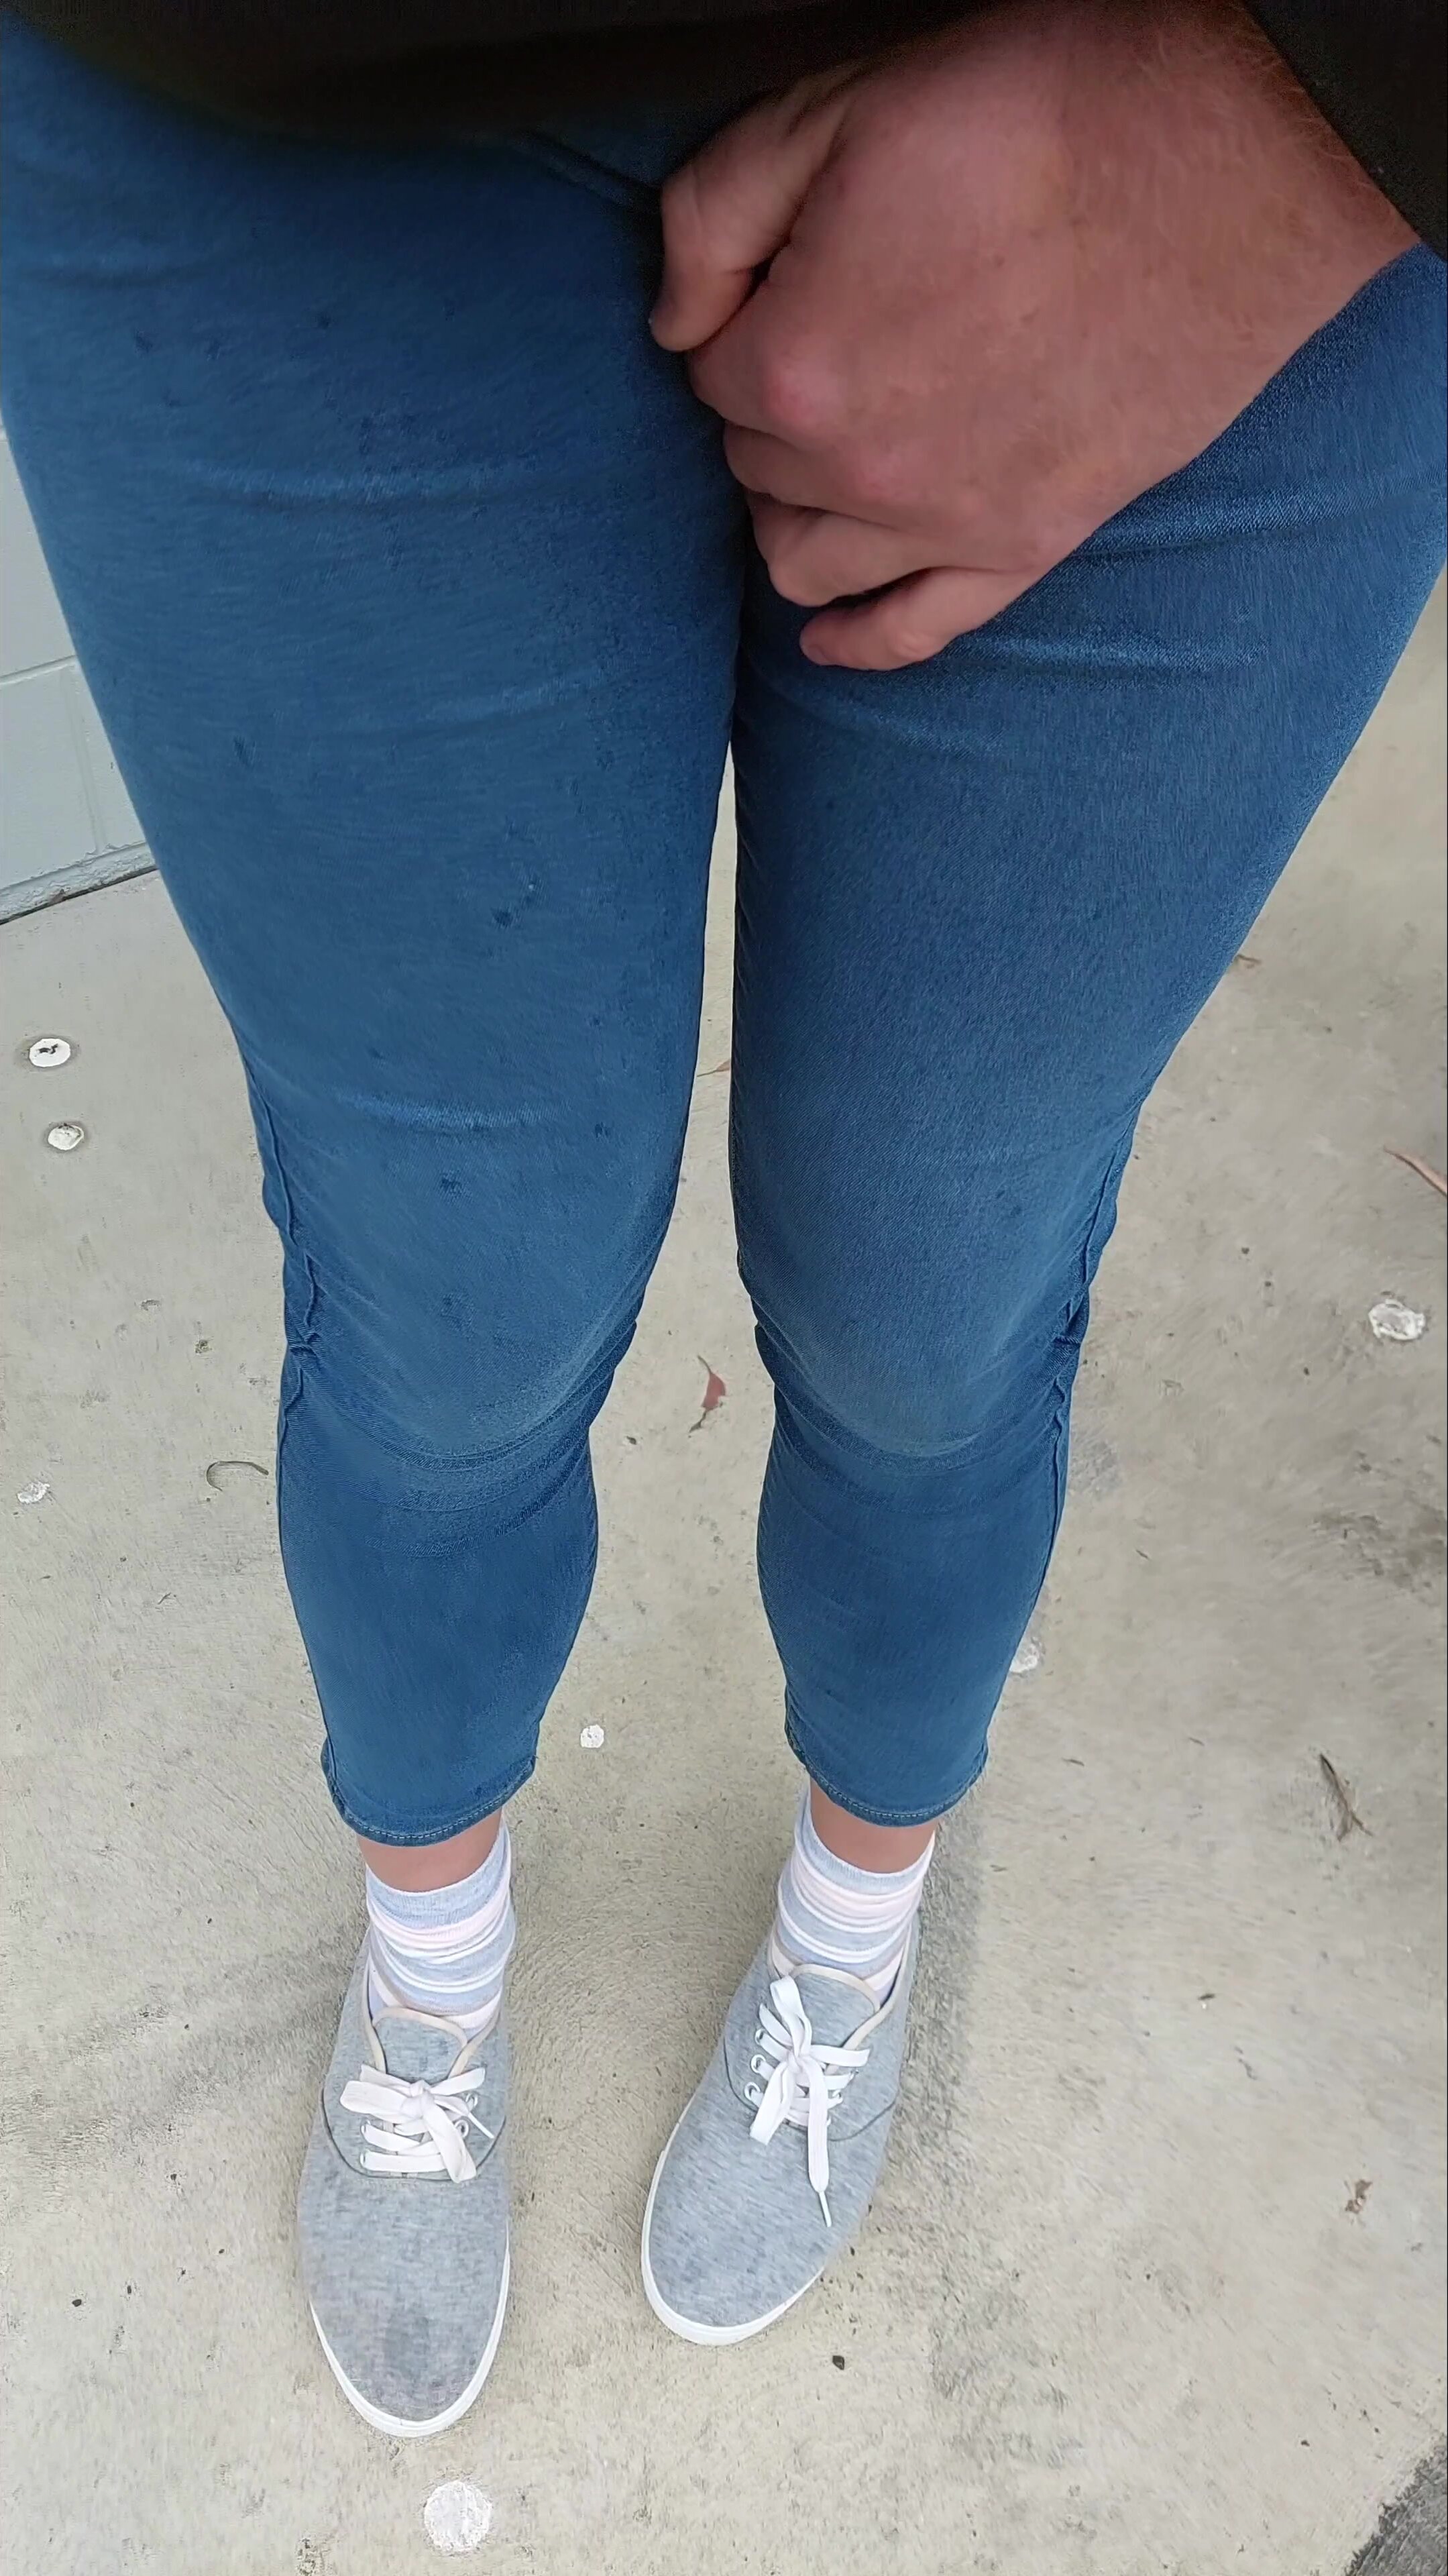 Crossdress public jeans pee